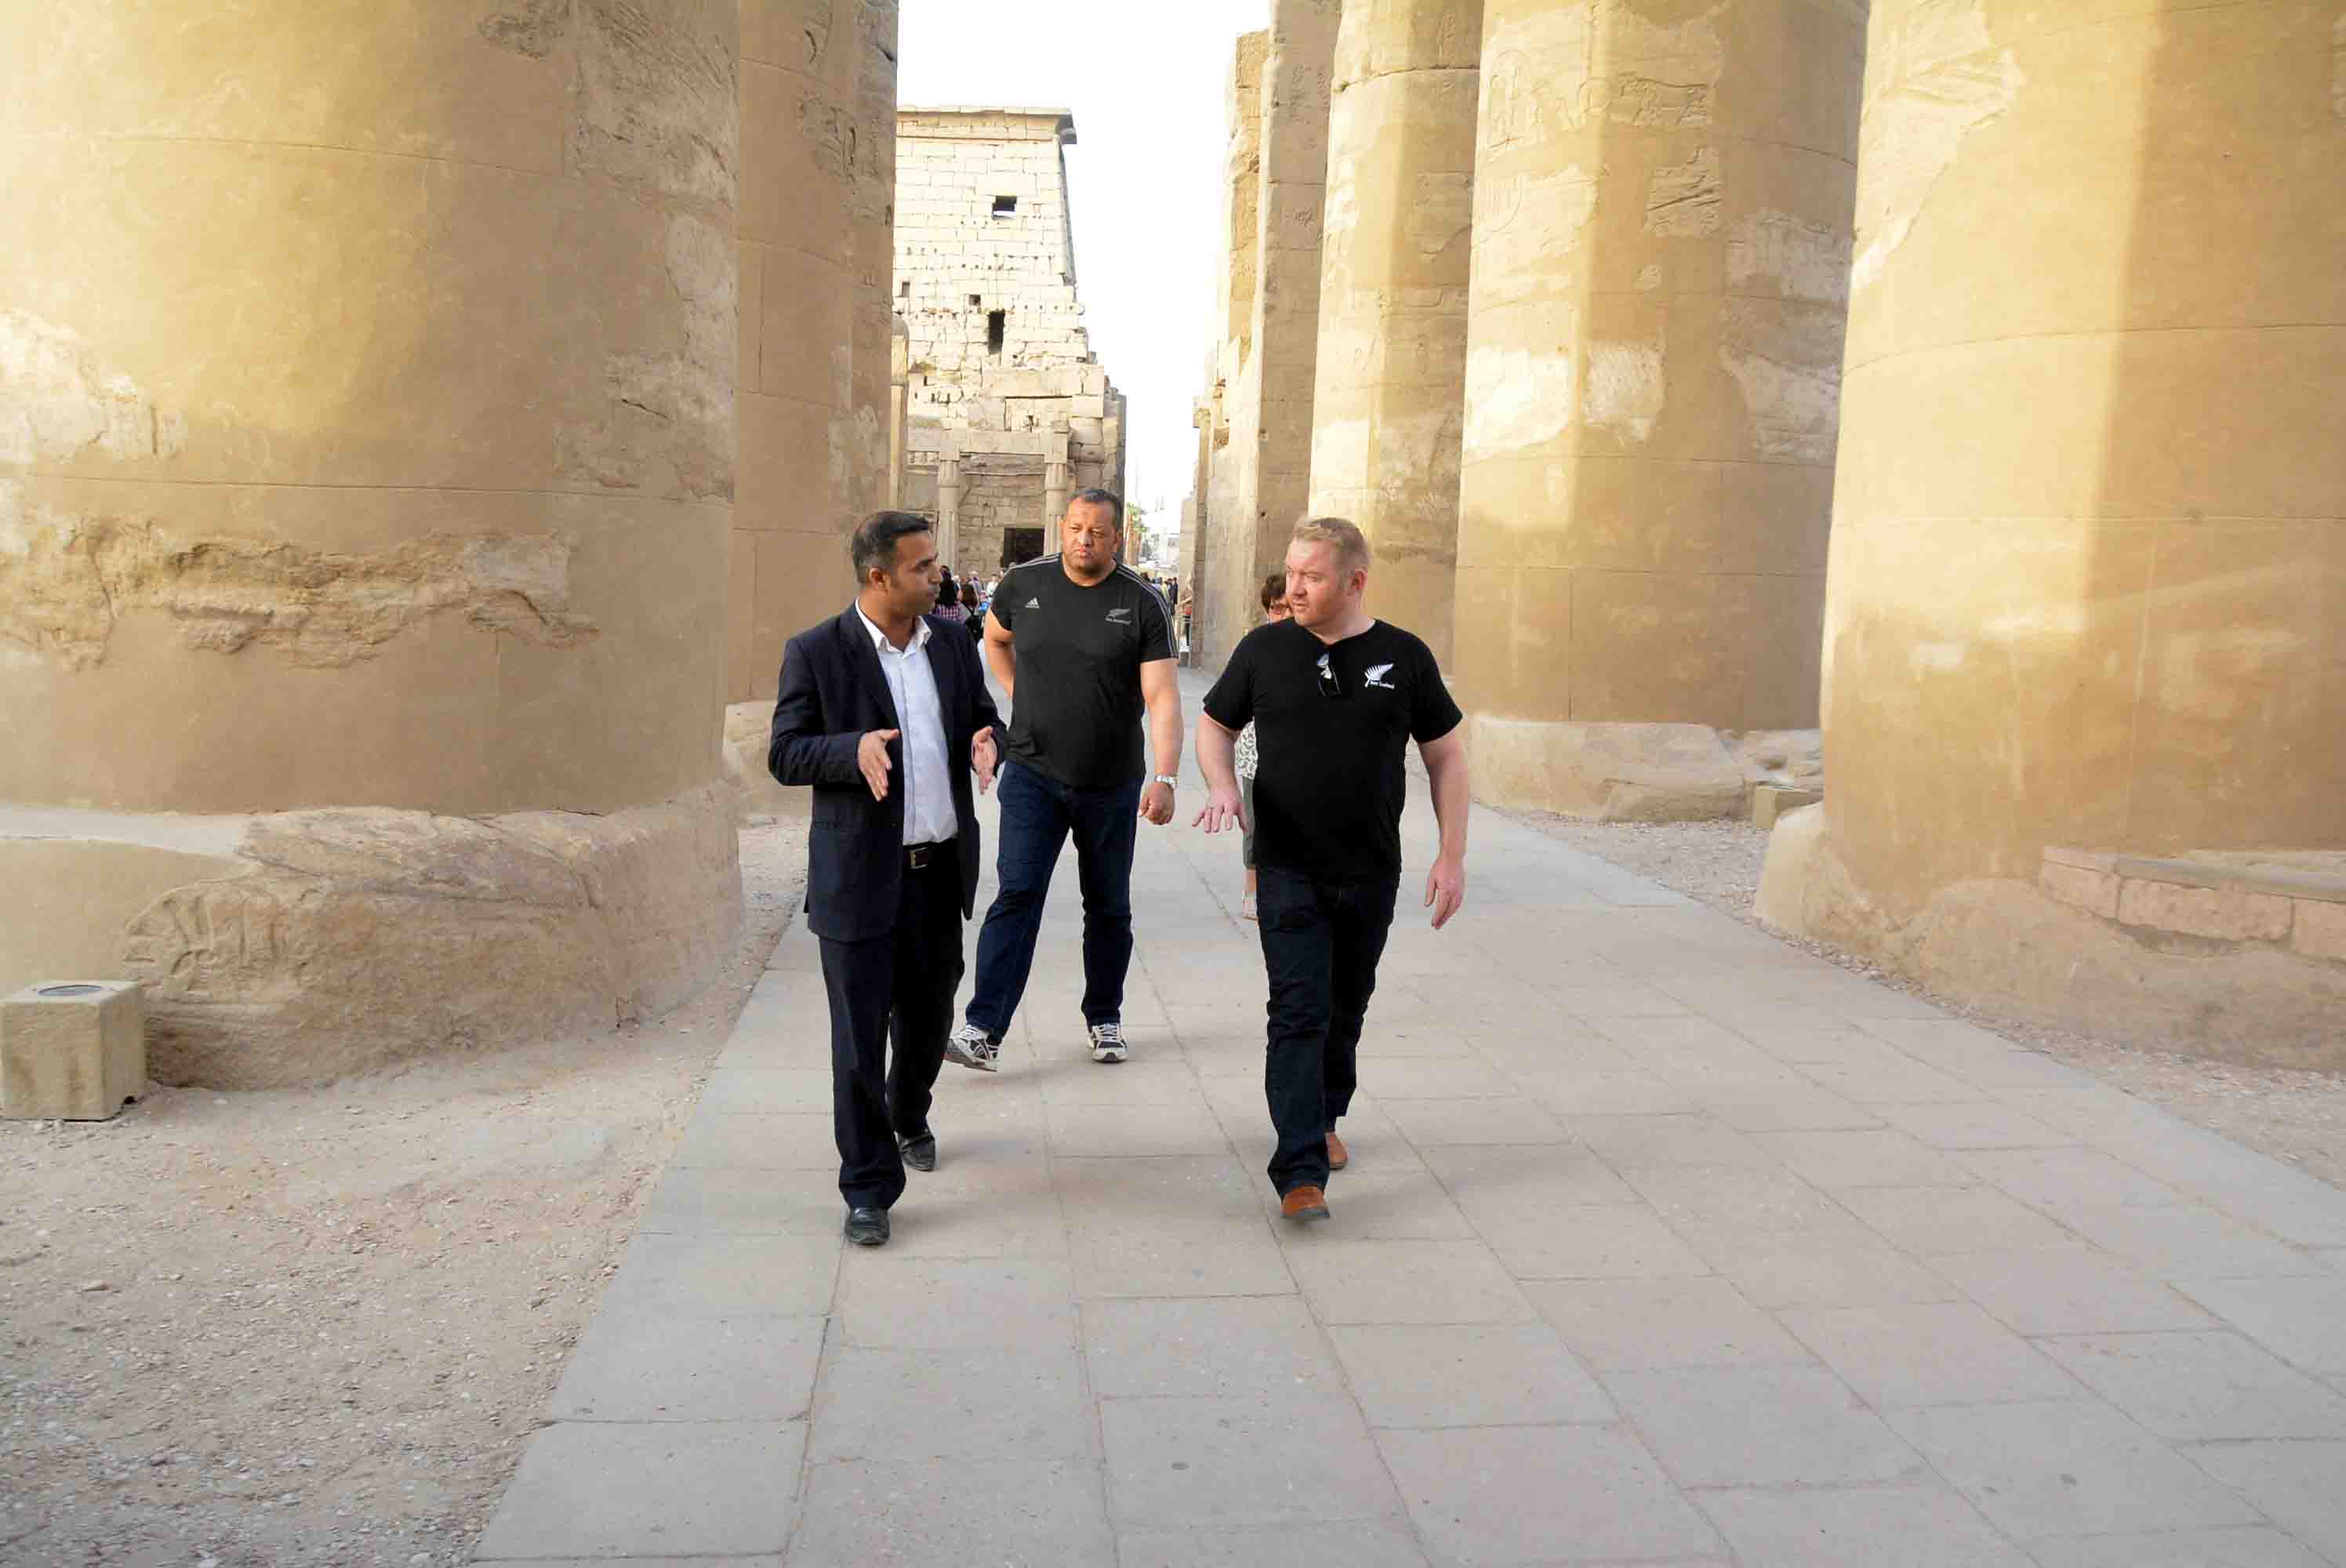 سفير نيوزلندا بالقاهرة يواصل جولاته السياحية بمعابد ومقابر الأقصر الفرعونية (5)